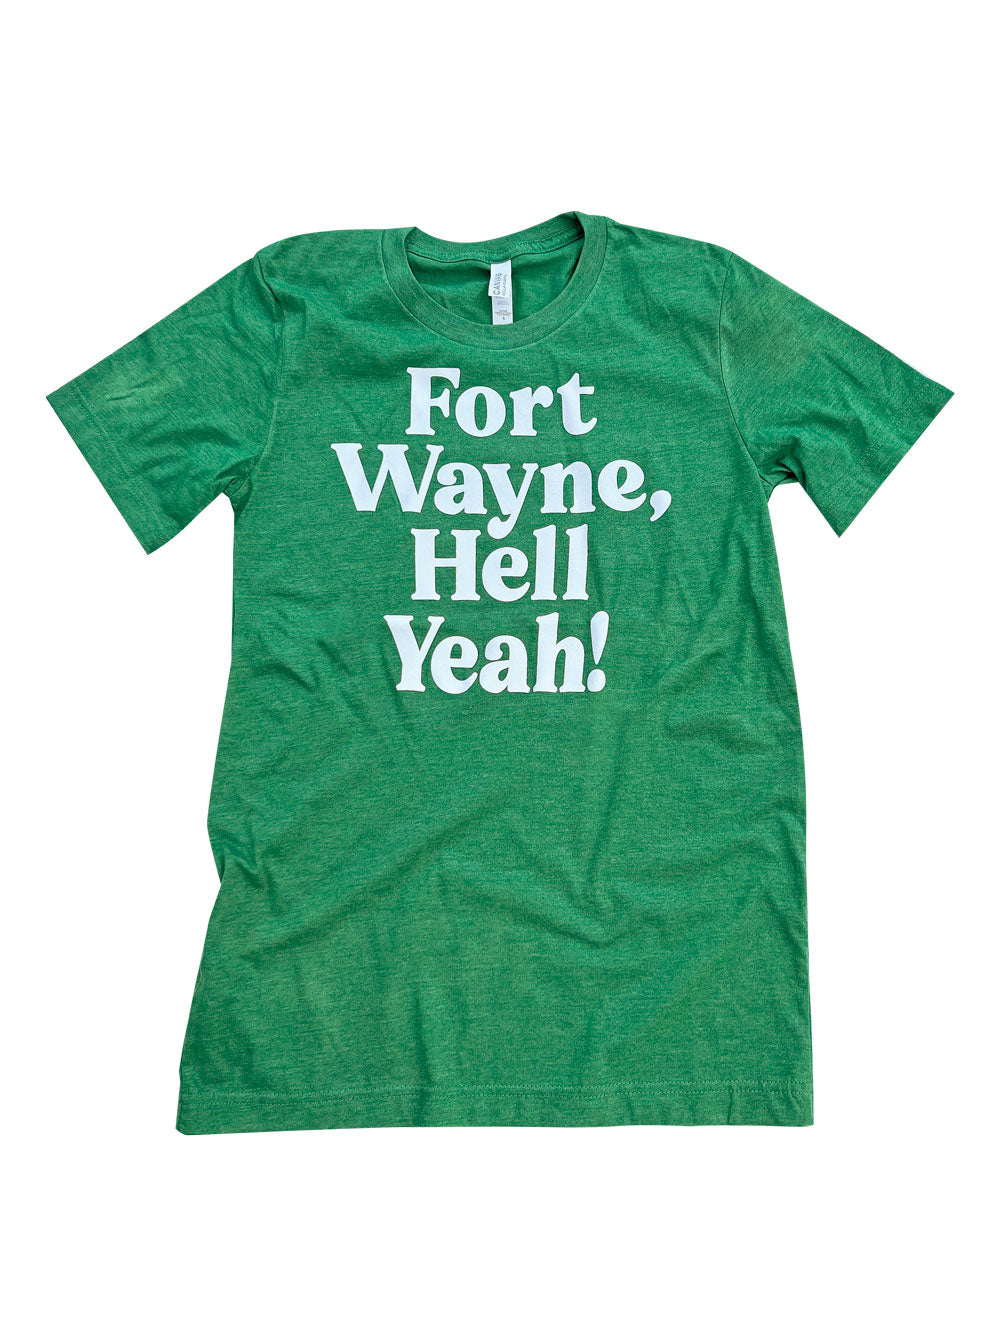 Fort Wayne, Hell Yeah!